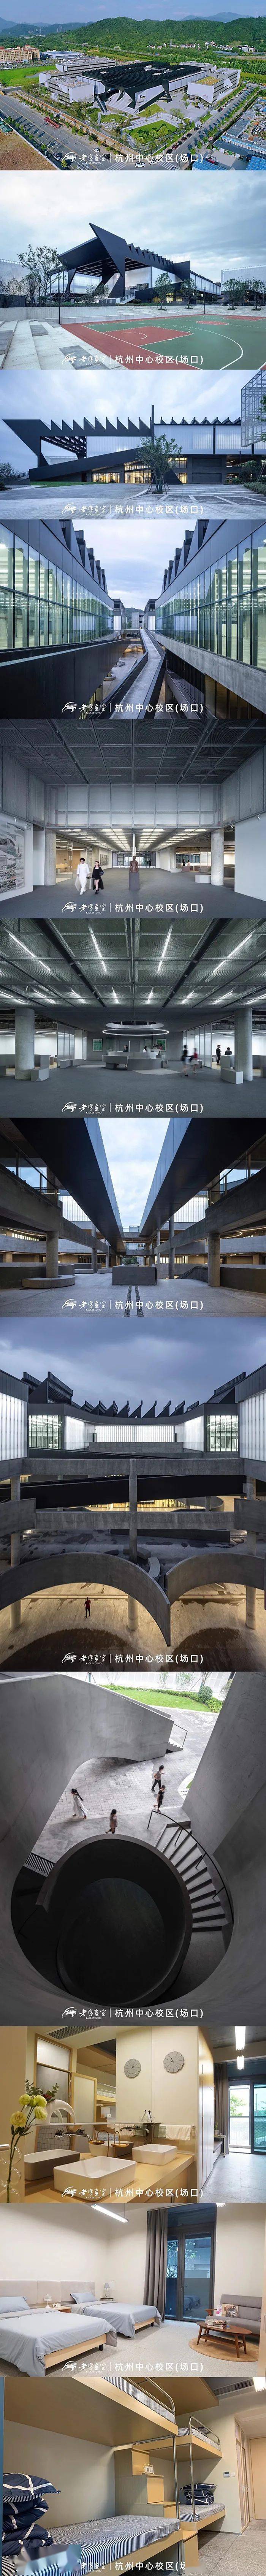 老鹰画室杭州中心校区图片